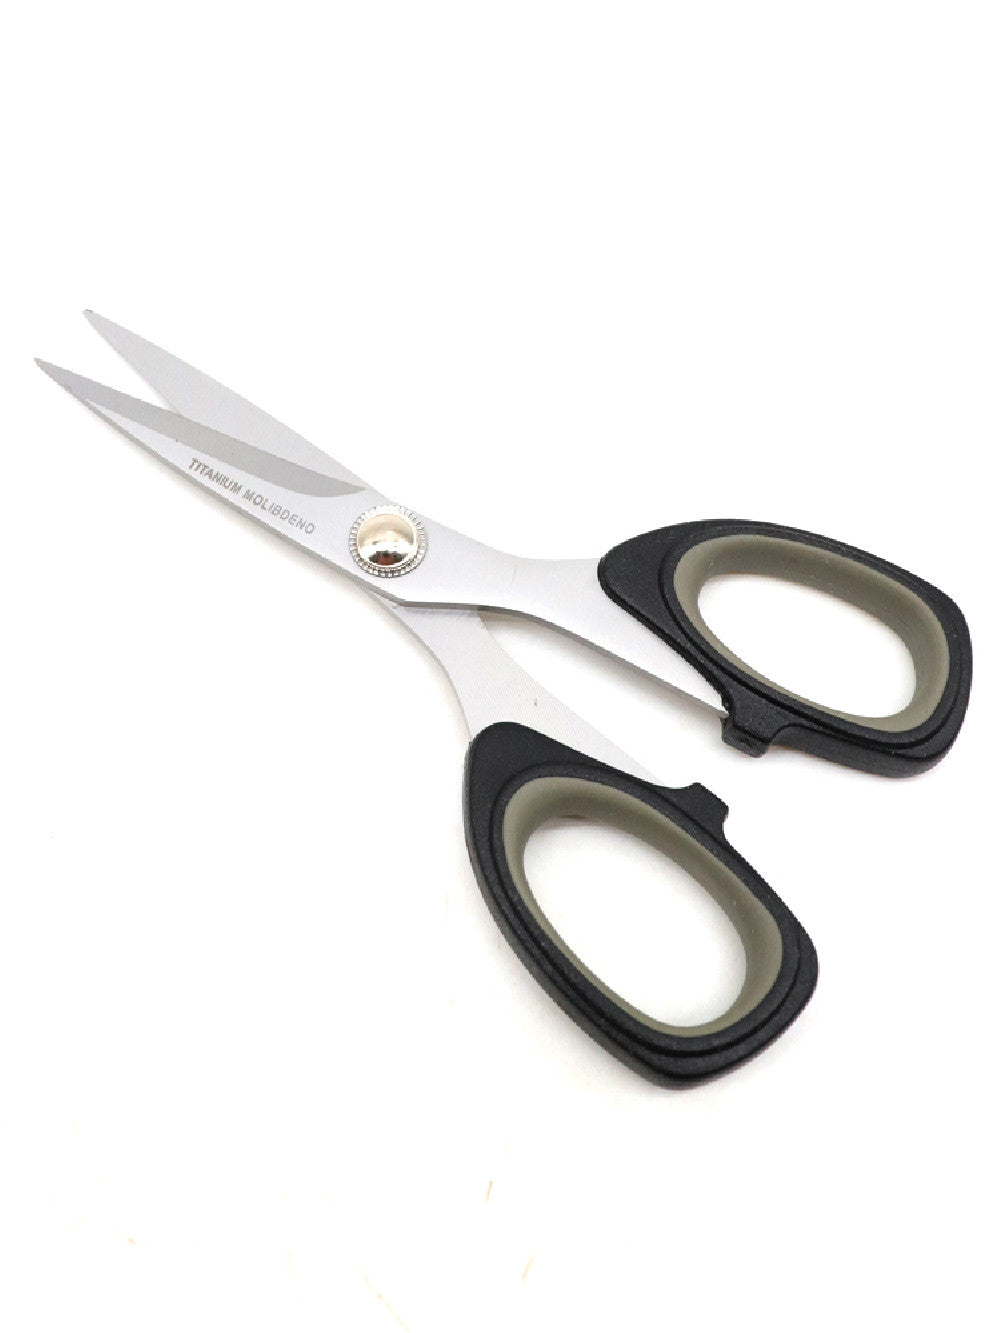 Professional Precision Scissors